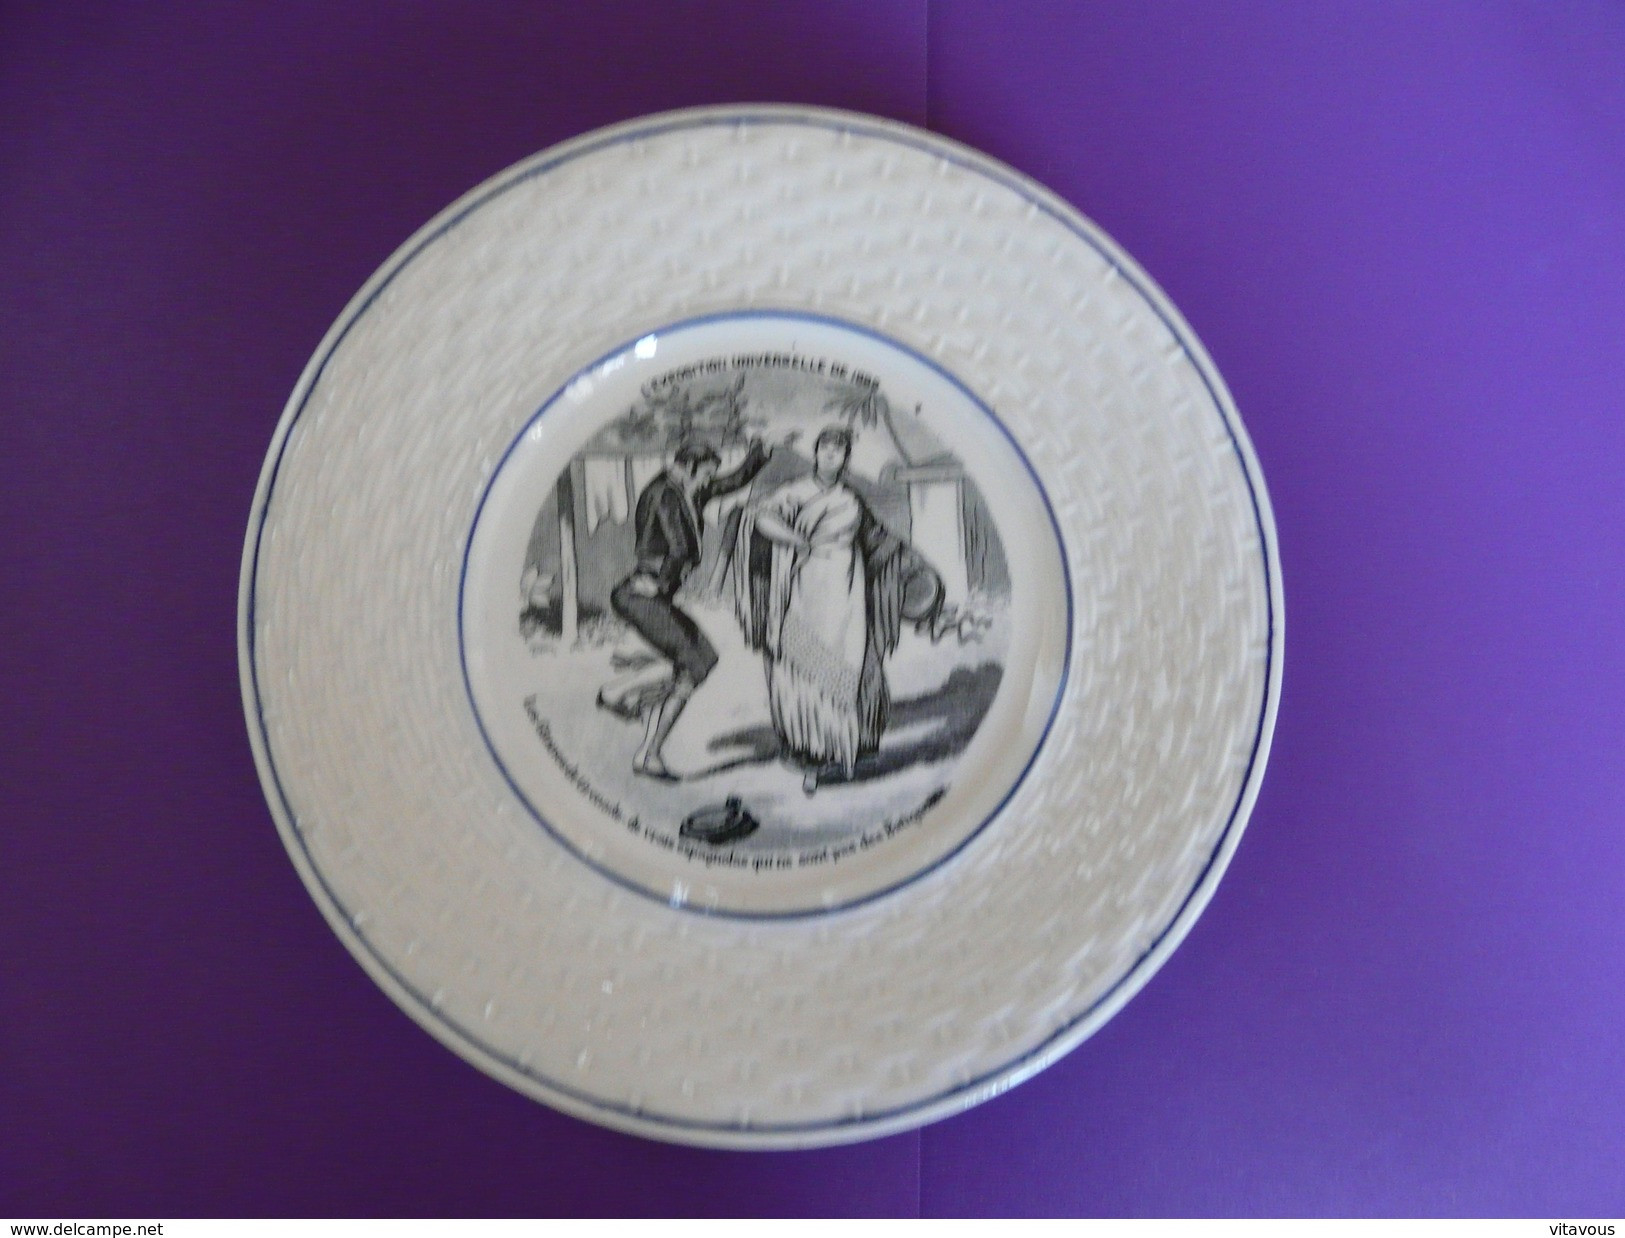 Assiette Porcelaine Gien XIX ème Siècles - Exposition Universelle De 1889 - Gien (FRA)